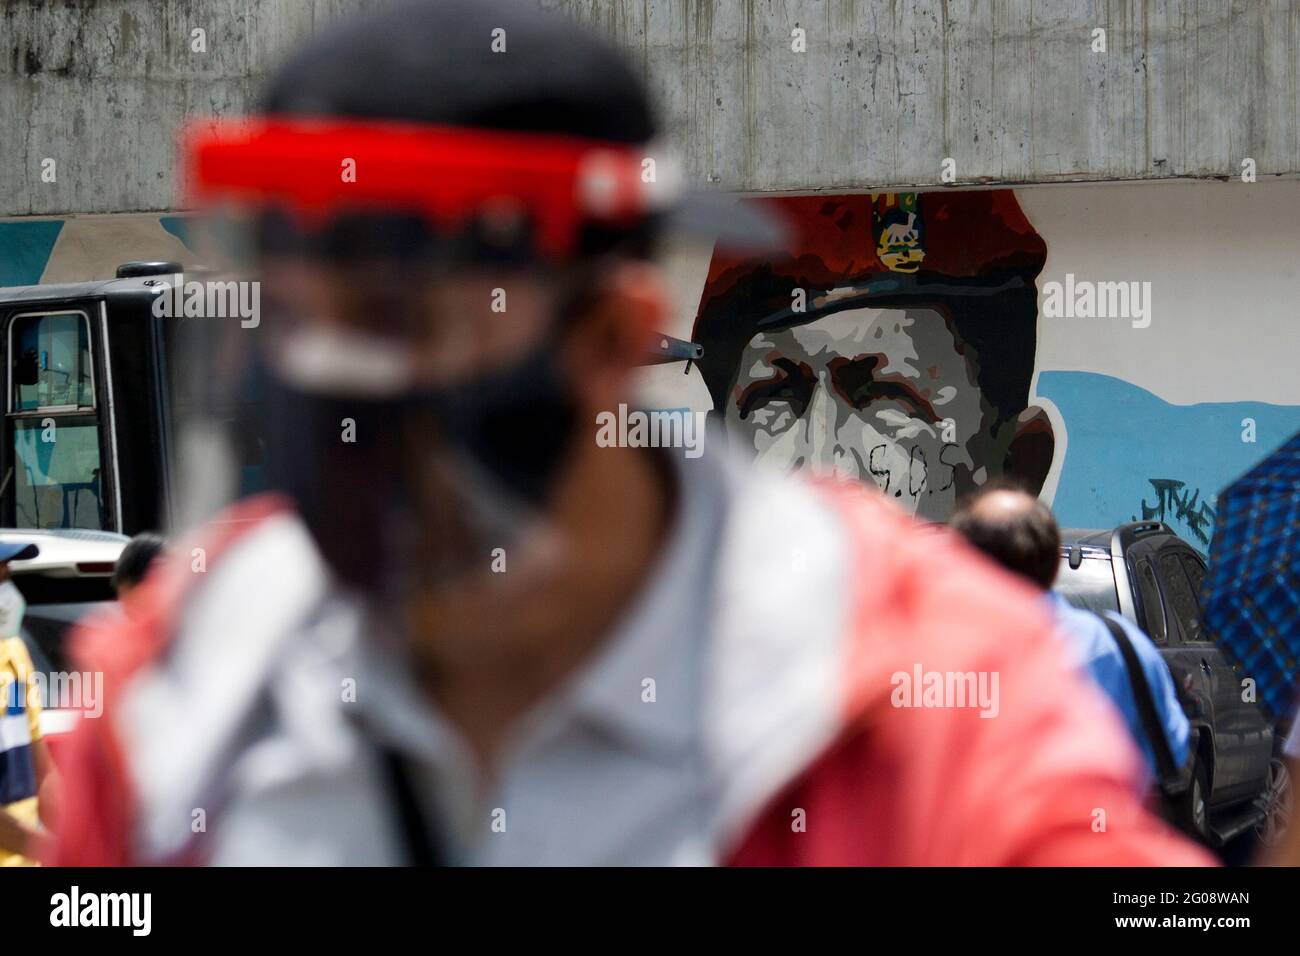 Nicht exklusiv: CARACAS, VENEZUELA - 1. JUNI: Personen kommen im Hotel Alba in der Gemeinde Libertador an, um während der Massenimpfungen eine Dosis von Covid-19 zu erhalten Stockfoto